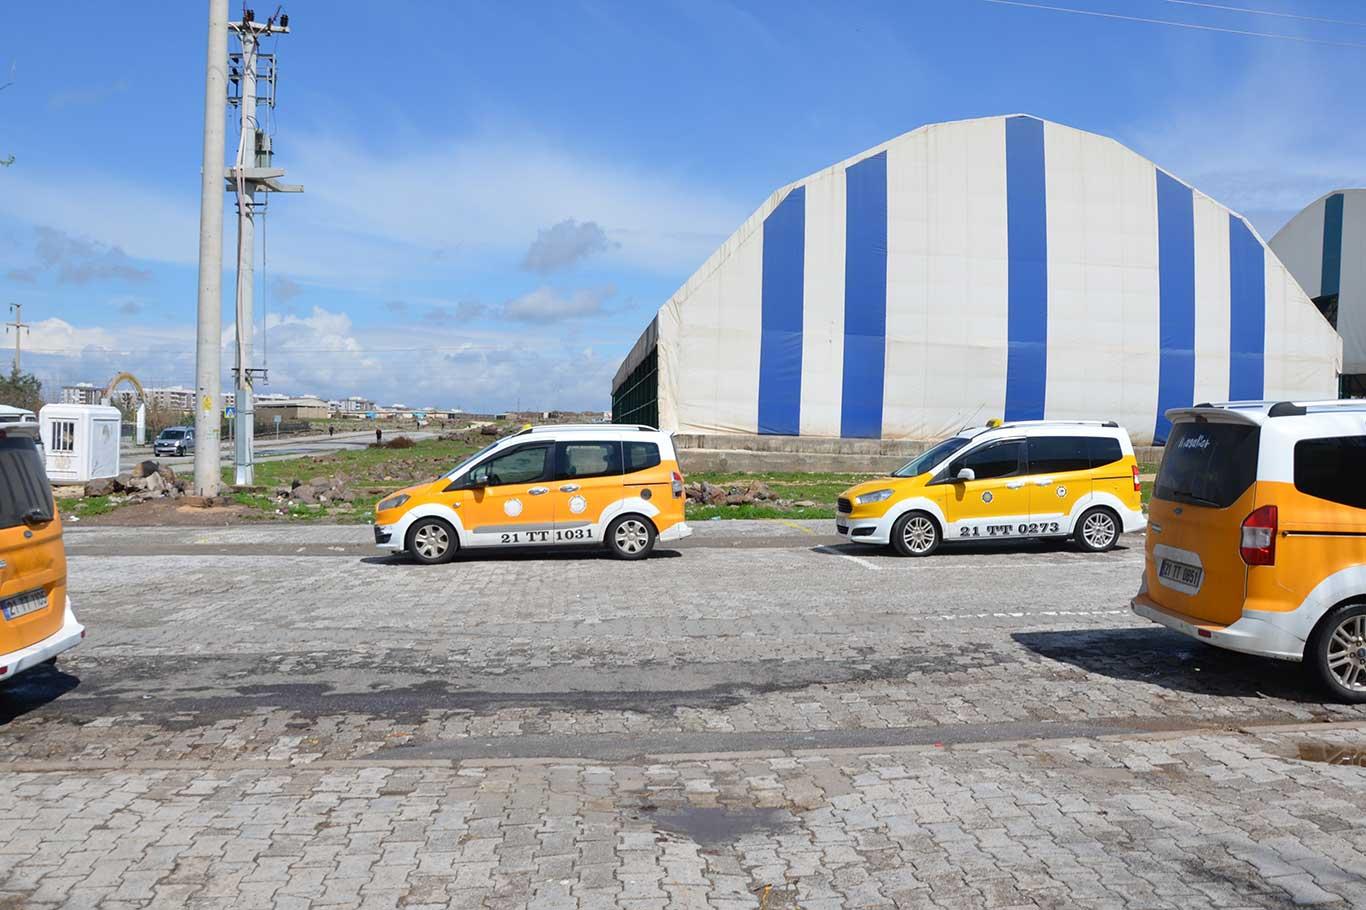 Diyarbakır'da taksi sahipleri: "Tek-çift plaka uygulaması" insanları mağdur edecek